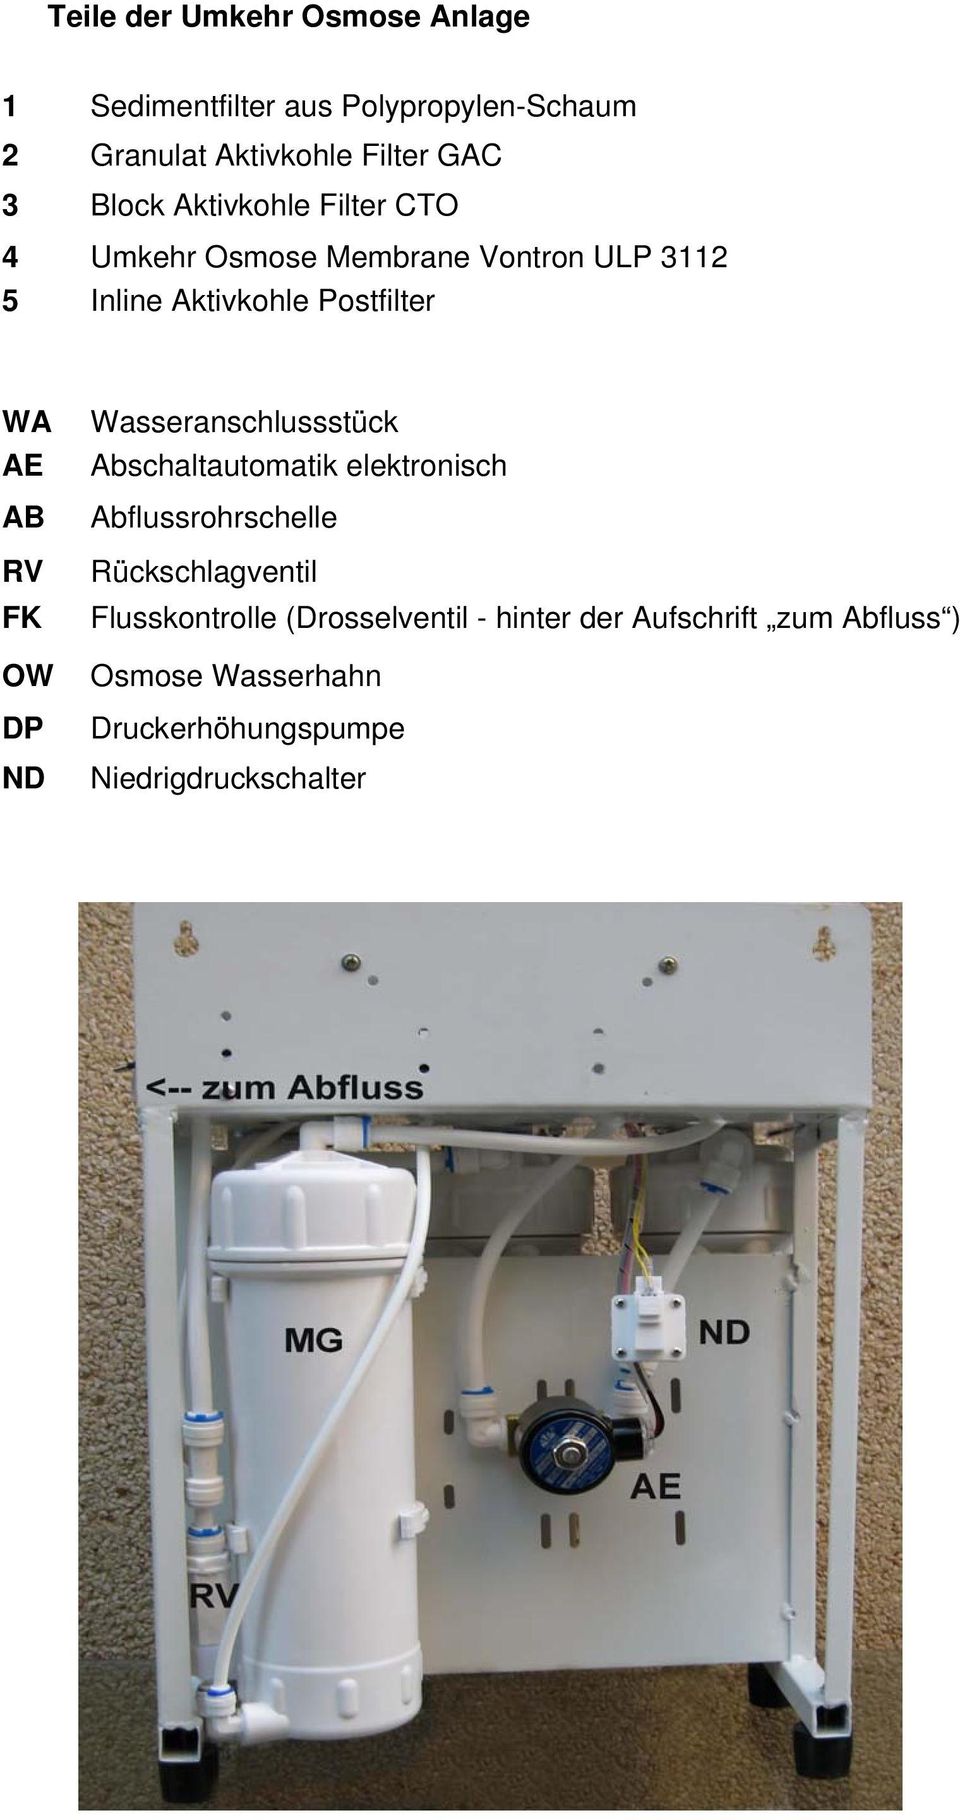 RV FK OW DP ND Wasseranschlussstück Abschaltautomatik elektronisch Abflussrohrschelle Rückschlagventil